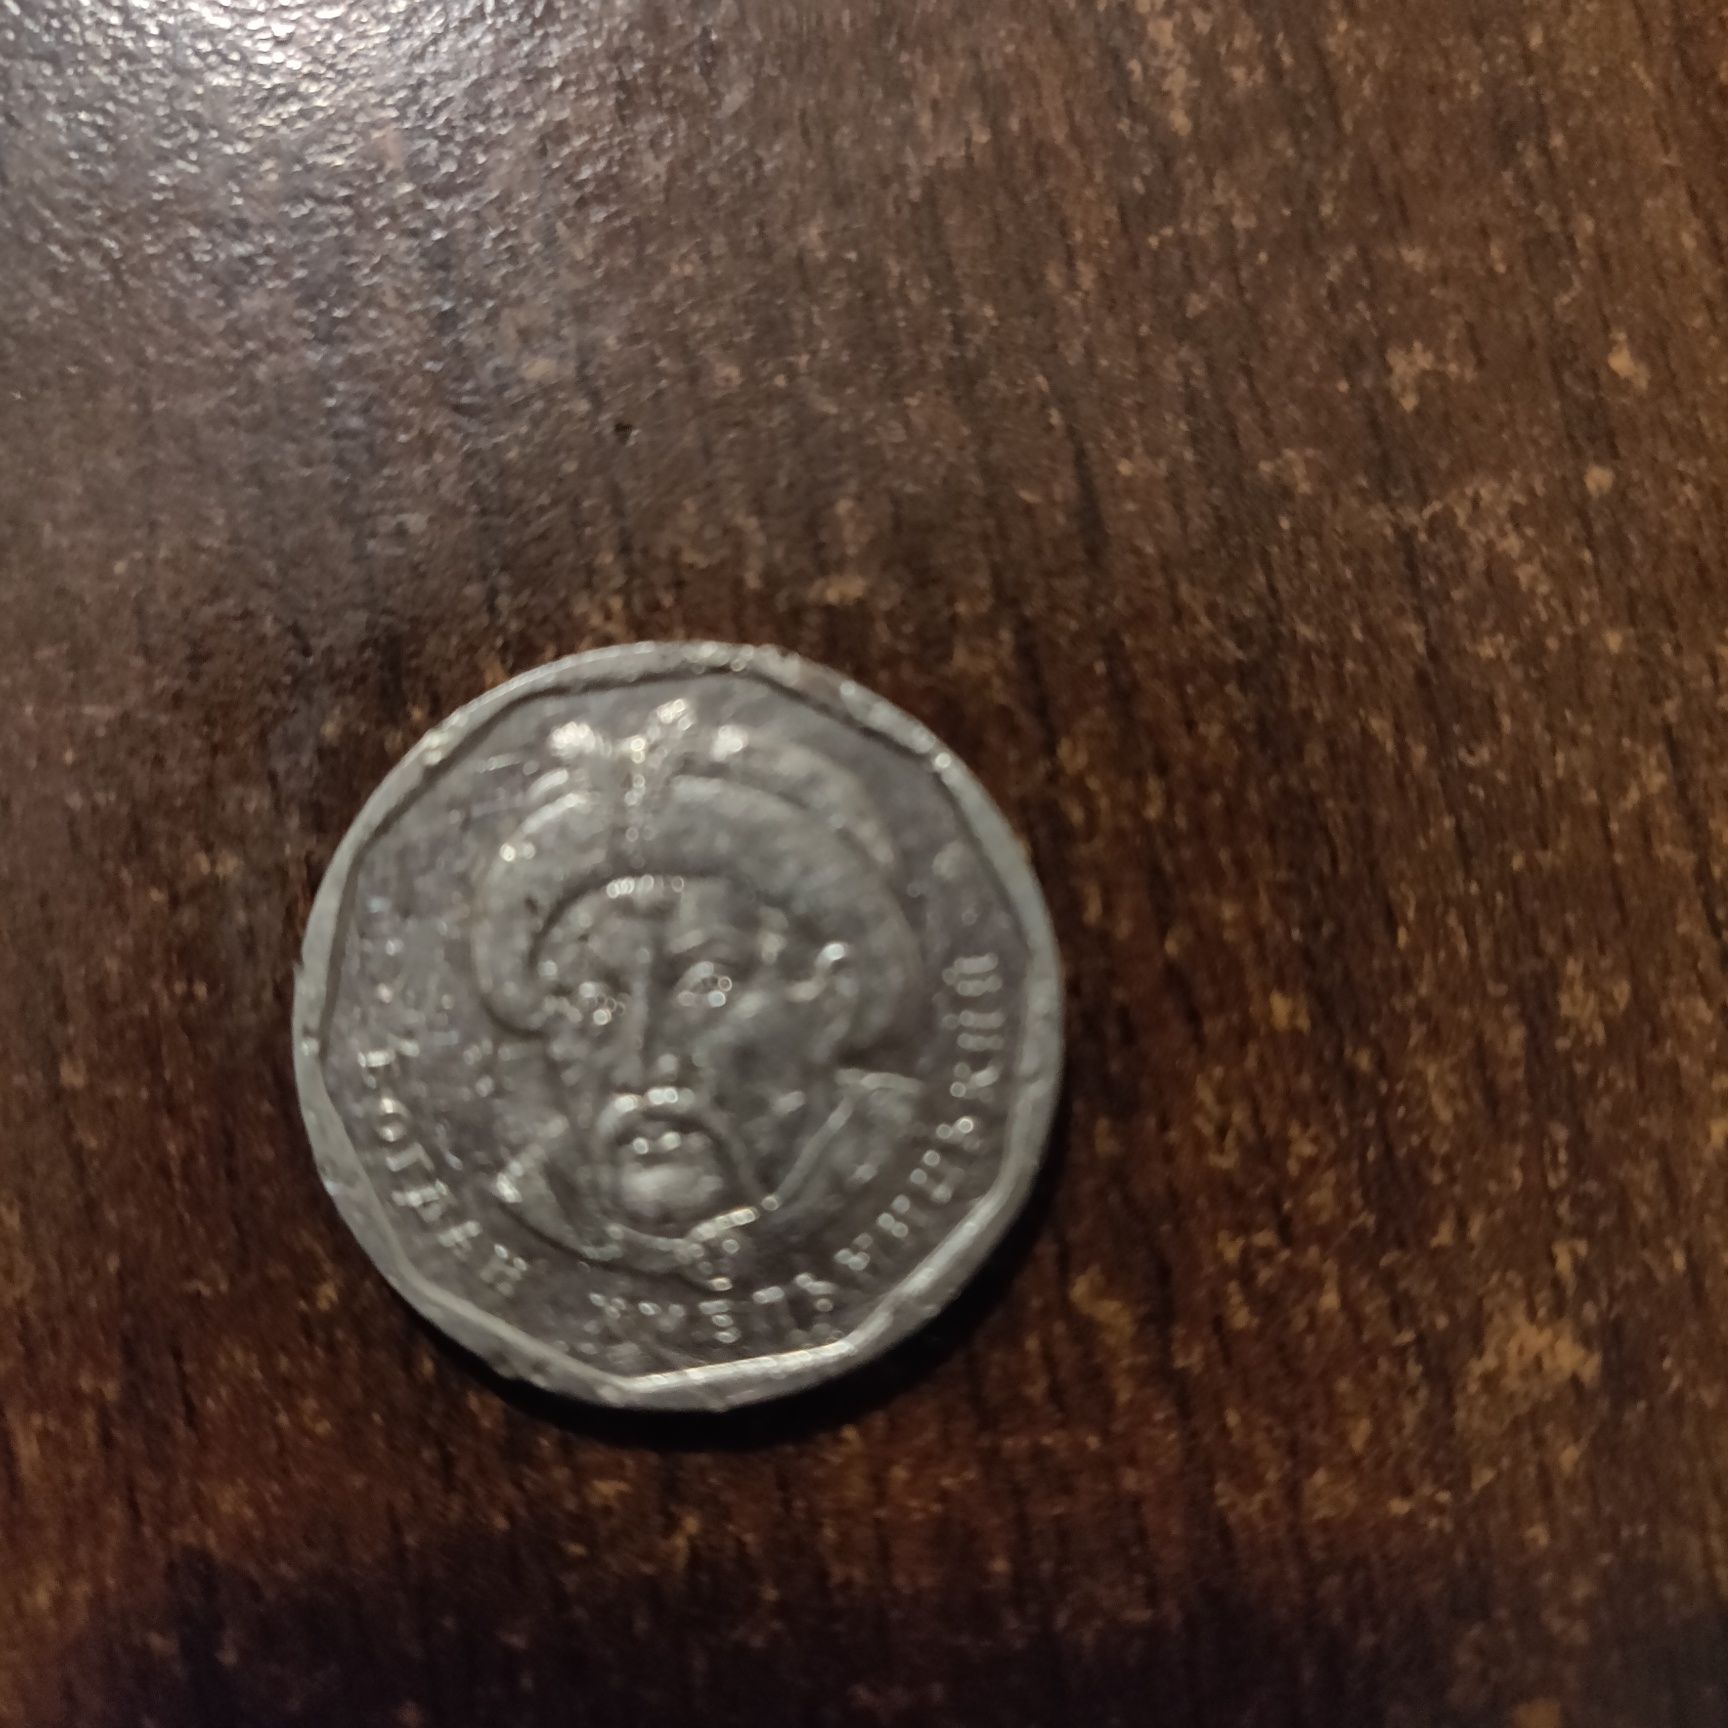 Брак монети 5 грн